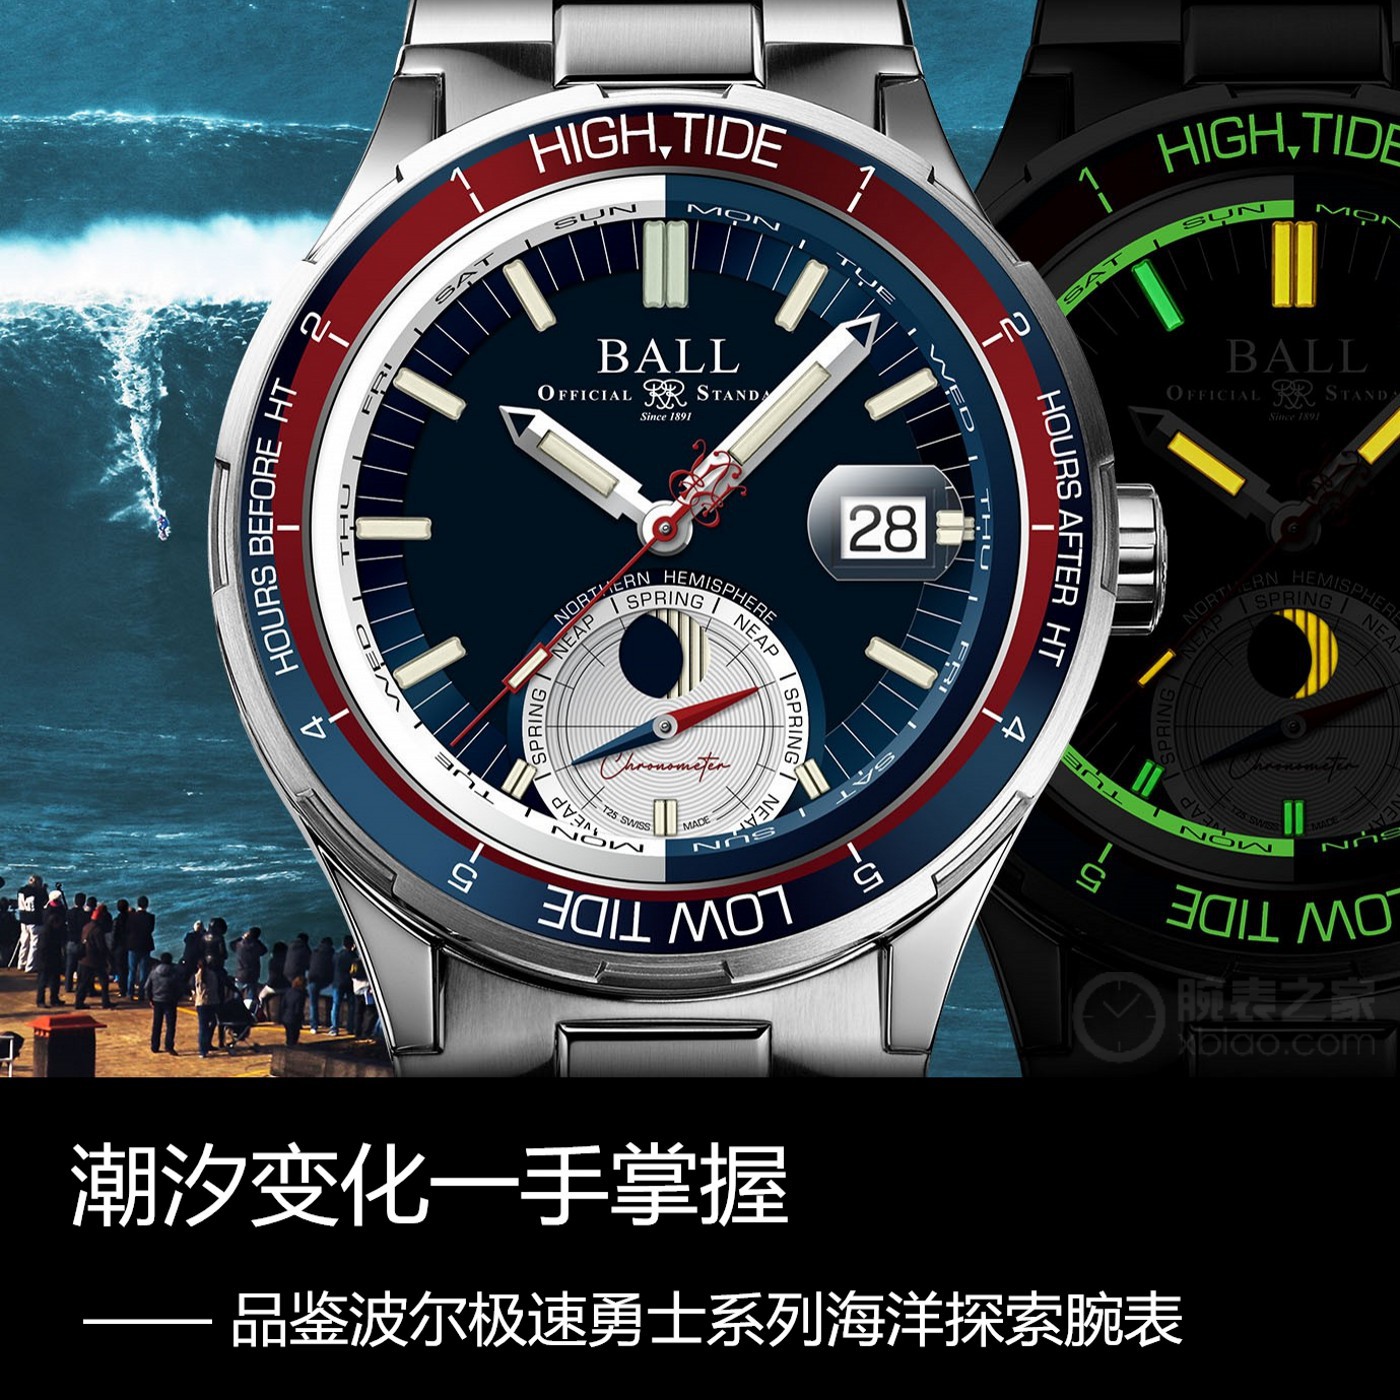 六百载|潮汐转变一手掌握 品评玻尔急速勇士系列产品深海探索腕表